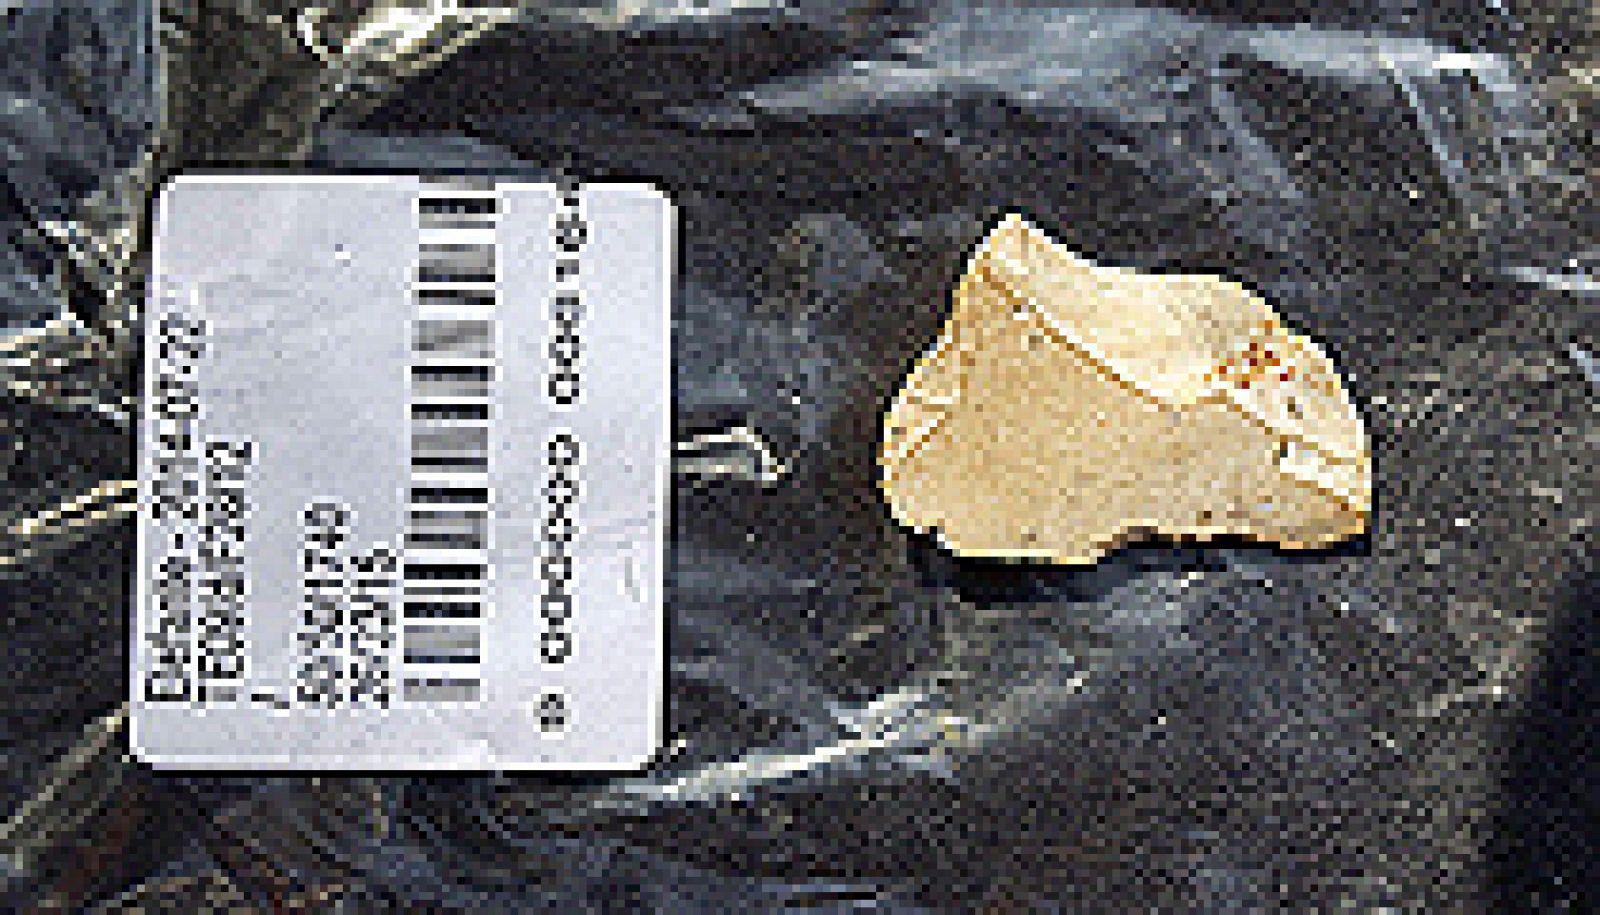 Una lasca permite datar la presencia de homínidos en Atapuerca hace 1,3 millones de años